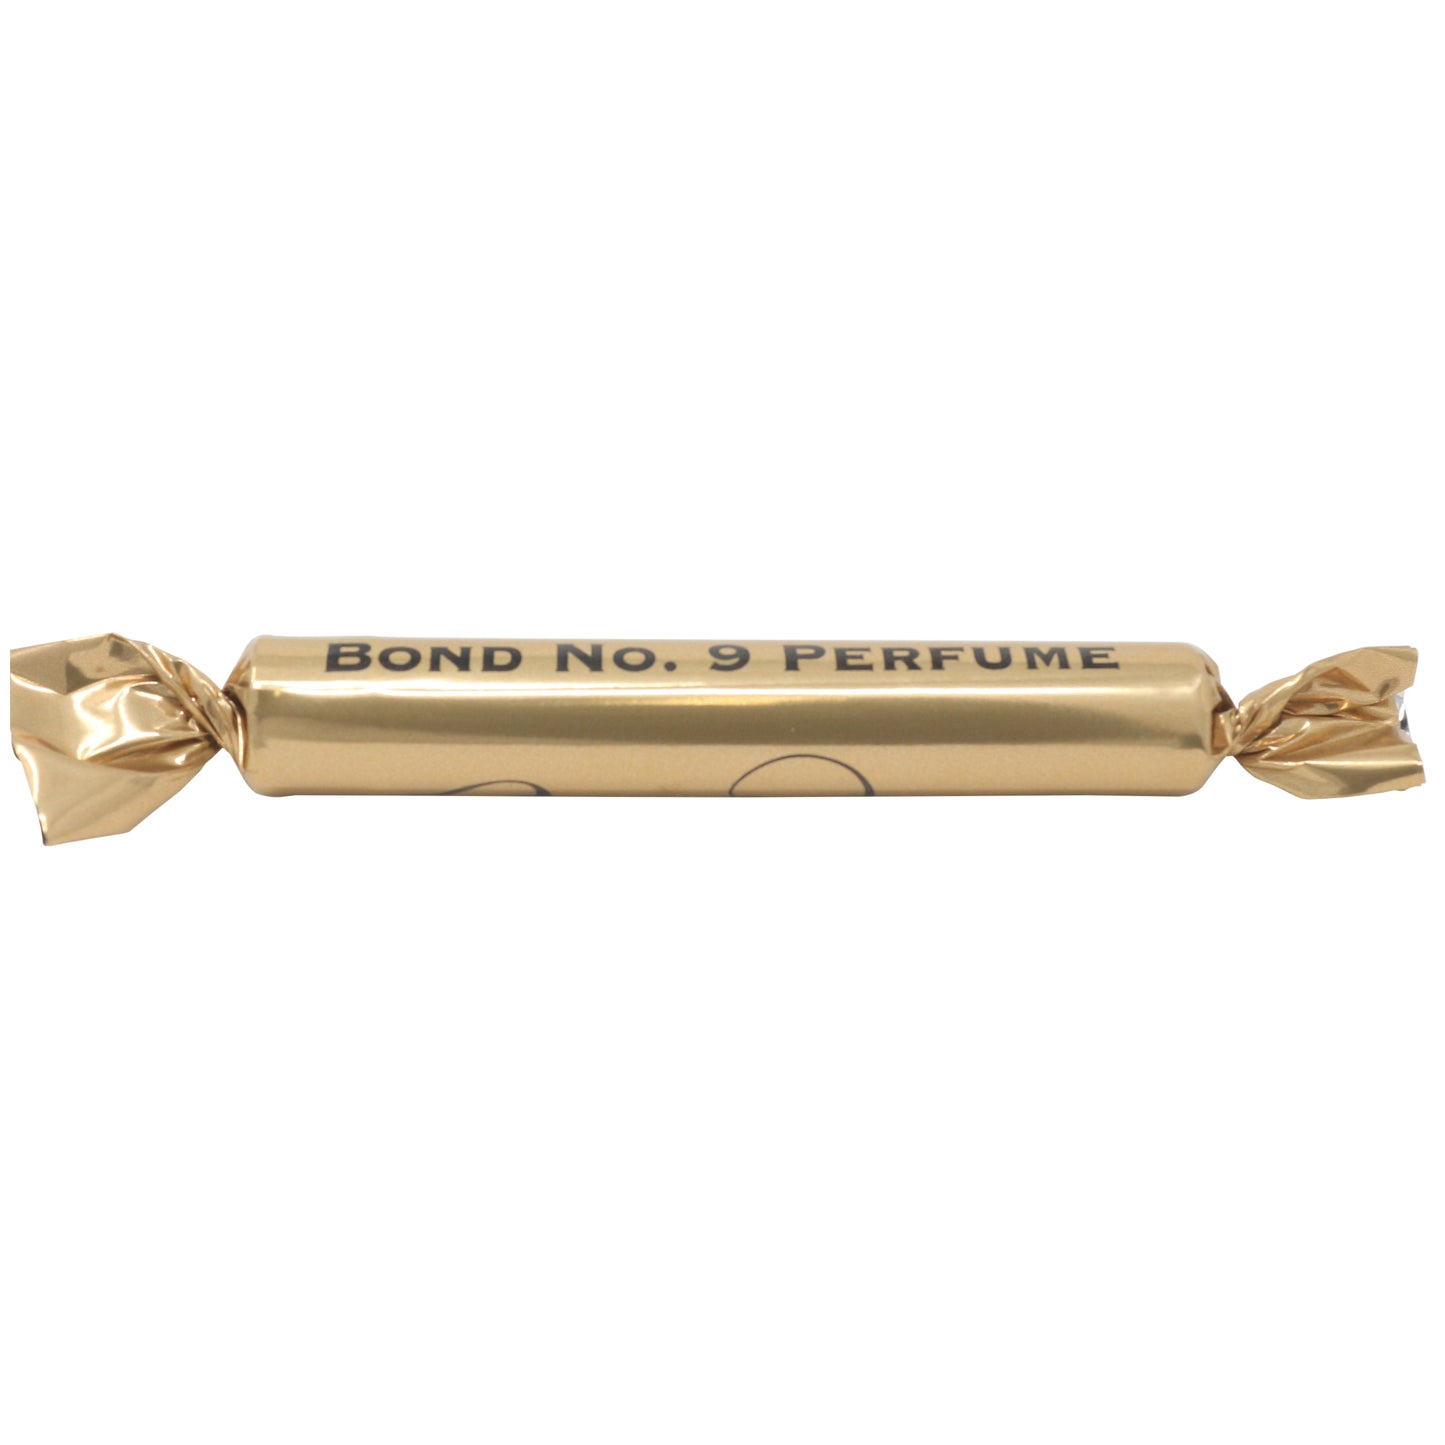 Bond No. 9 Bond No. 9 Parfüm 1.7 ml 0.054 fl. Öz. resmi parfüm örneği